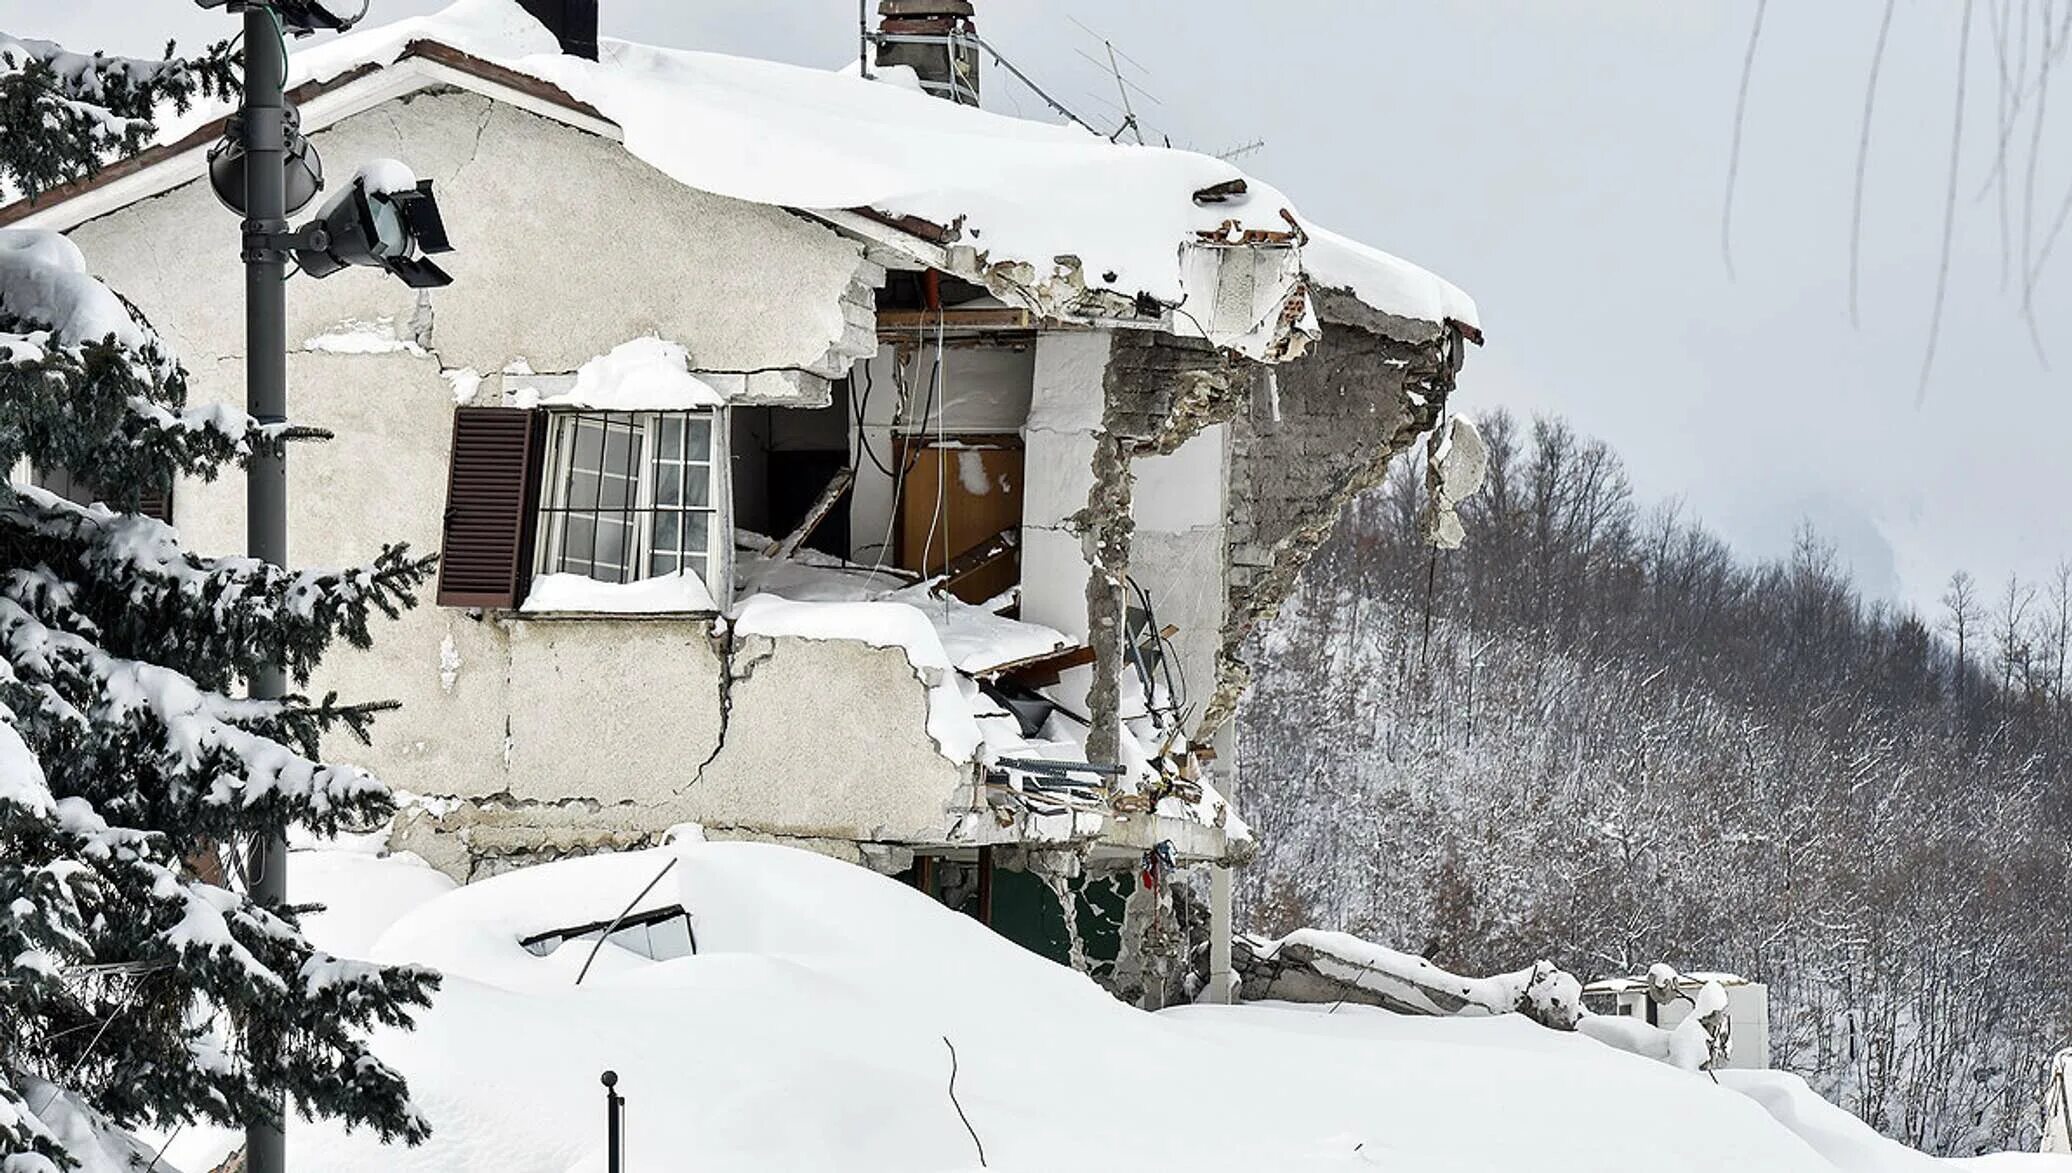 Разрушенный дом в снегу. Разрушенные дома. Лавина разрушения. Последствия лавины.